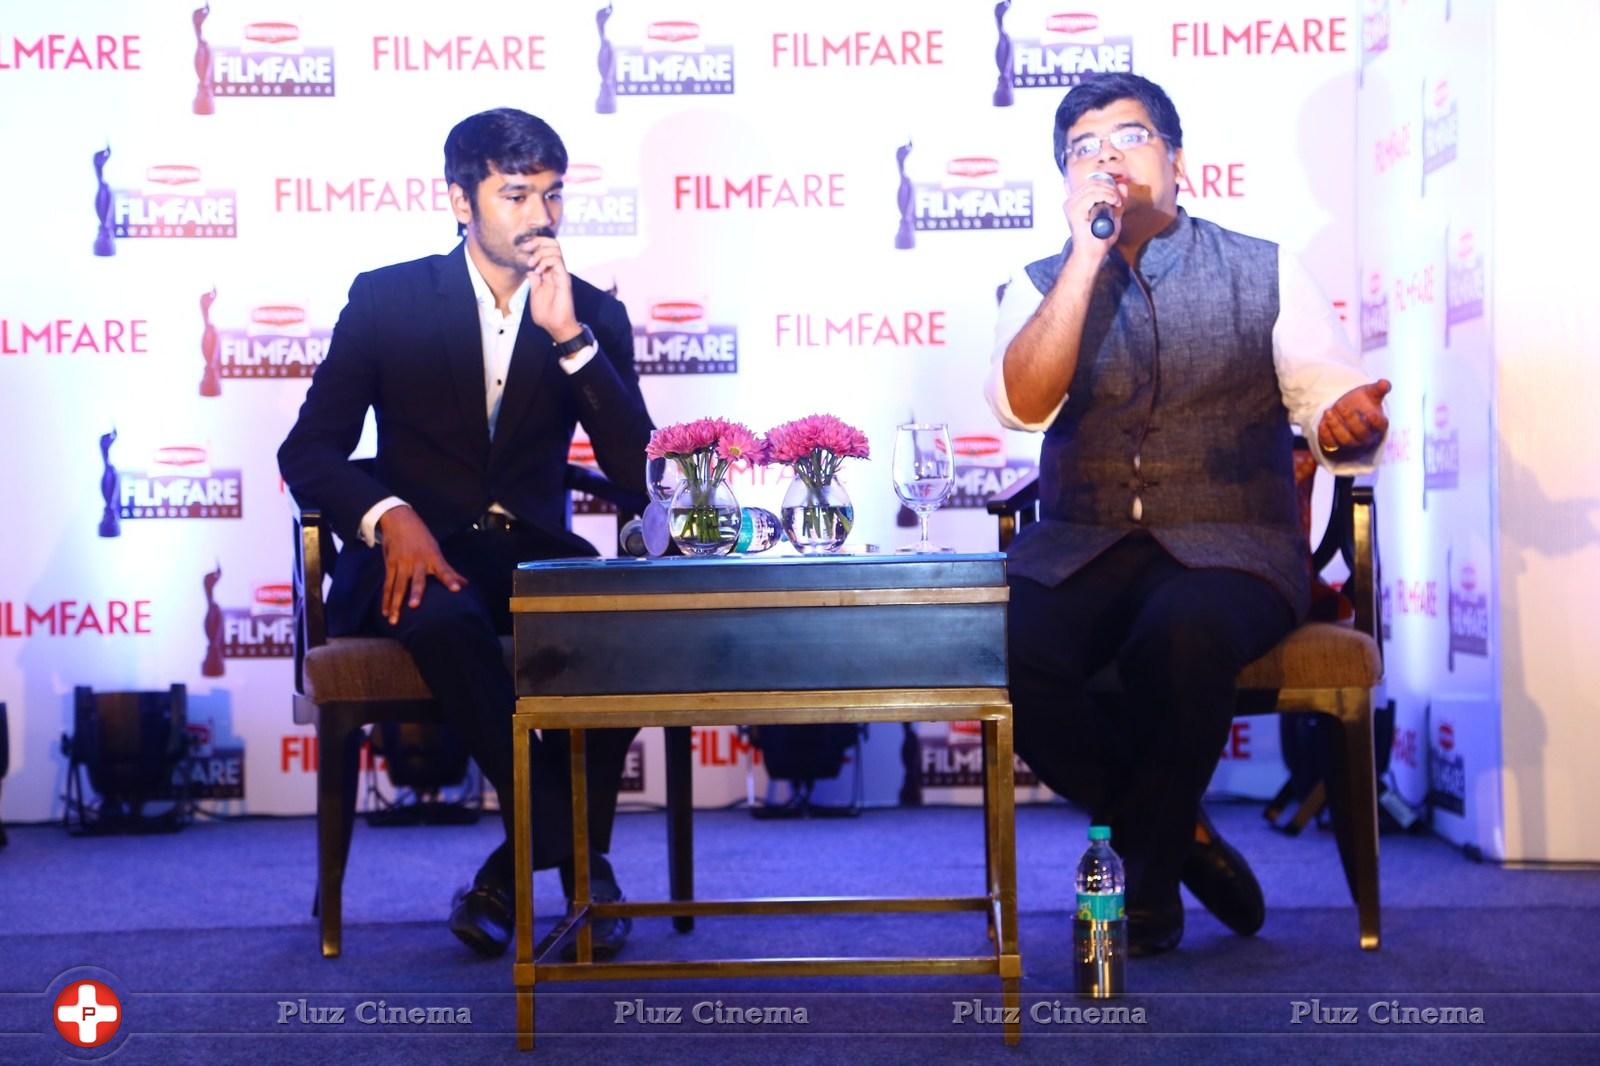 Dhanush at 62nd Britannia Filmfare Awards 2014 Press Meet Photos | Picture 1080044